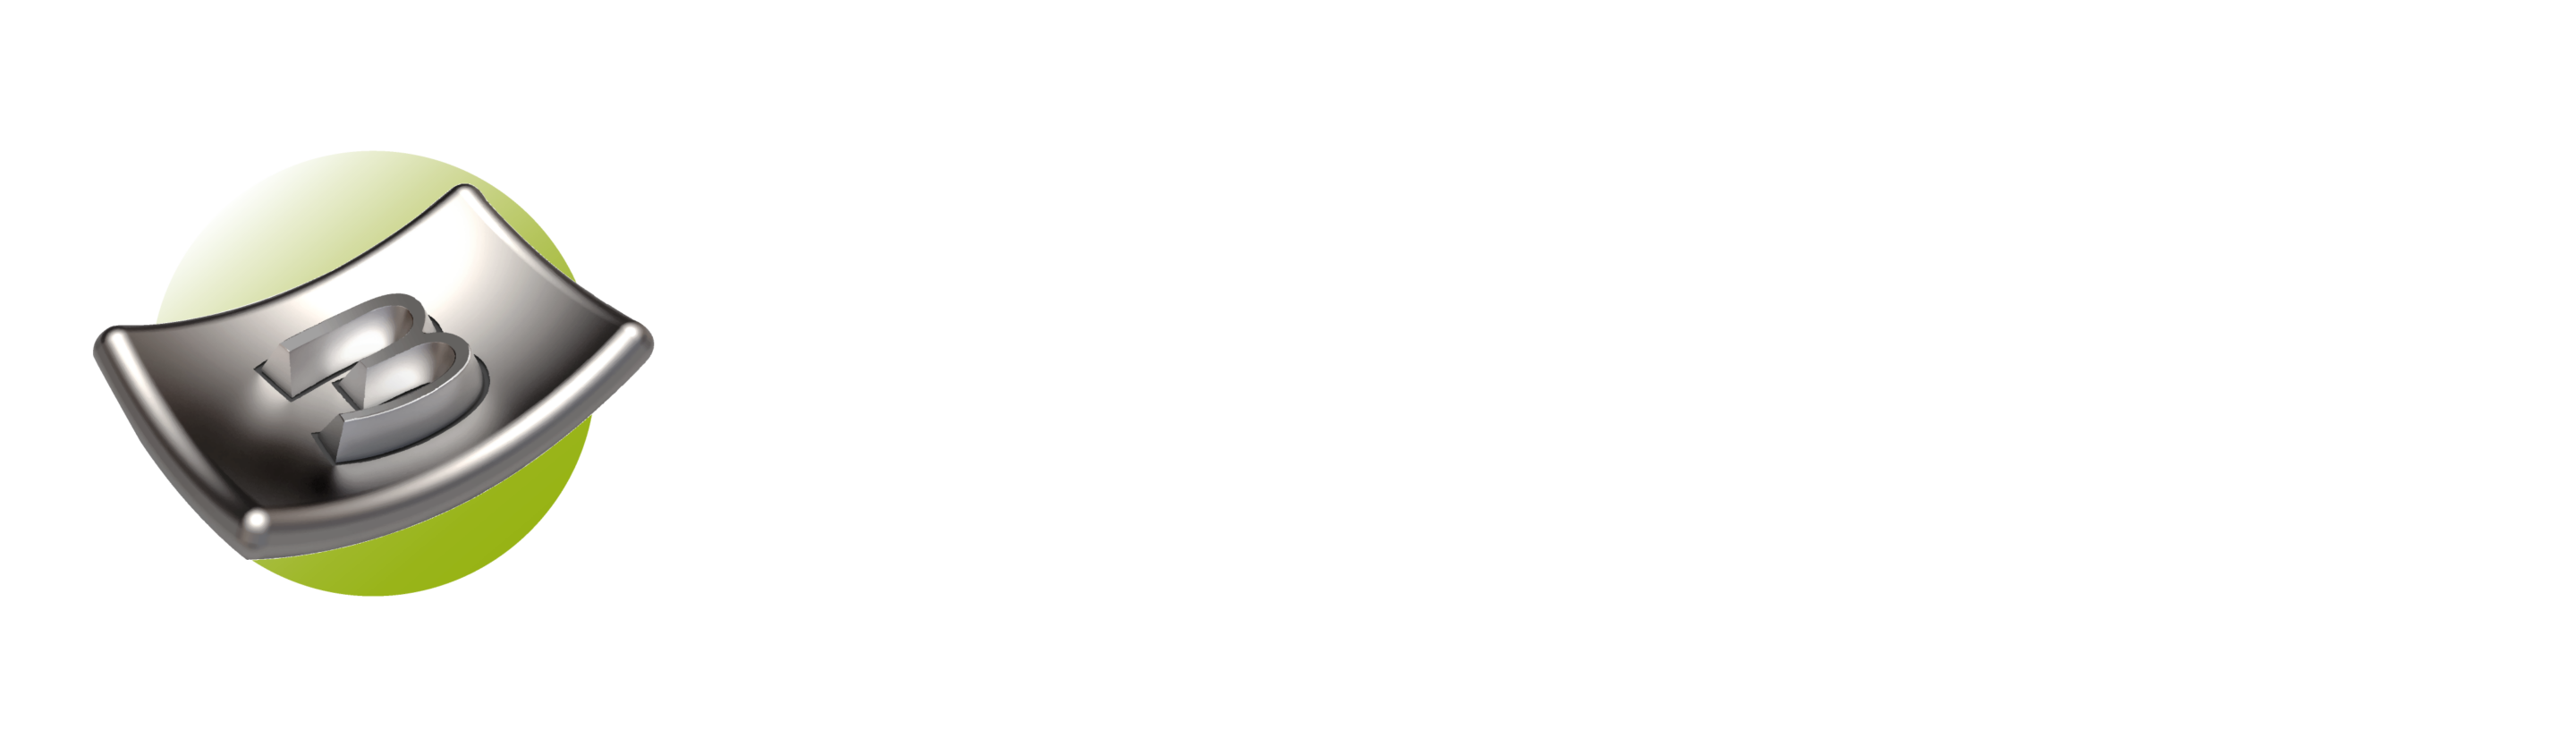 Lasertype_logo_fondfonce